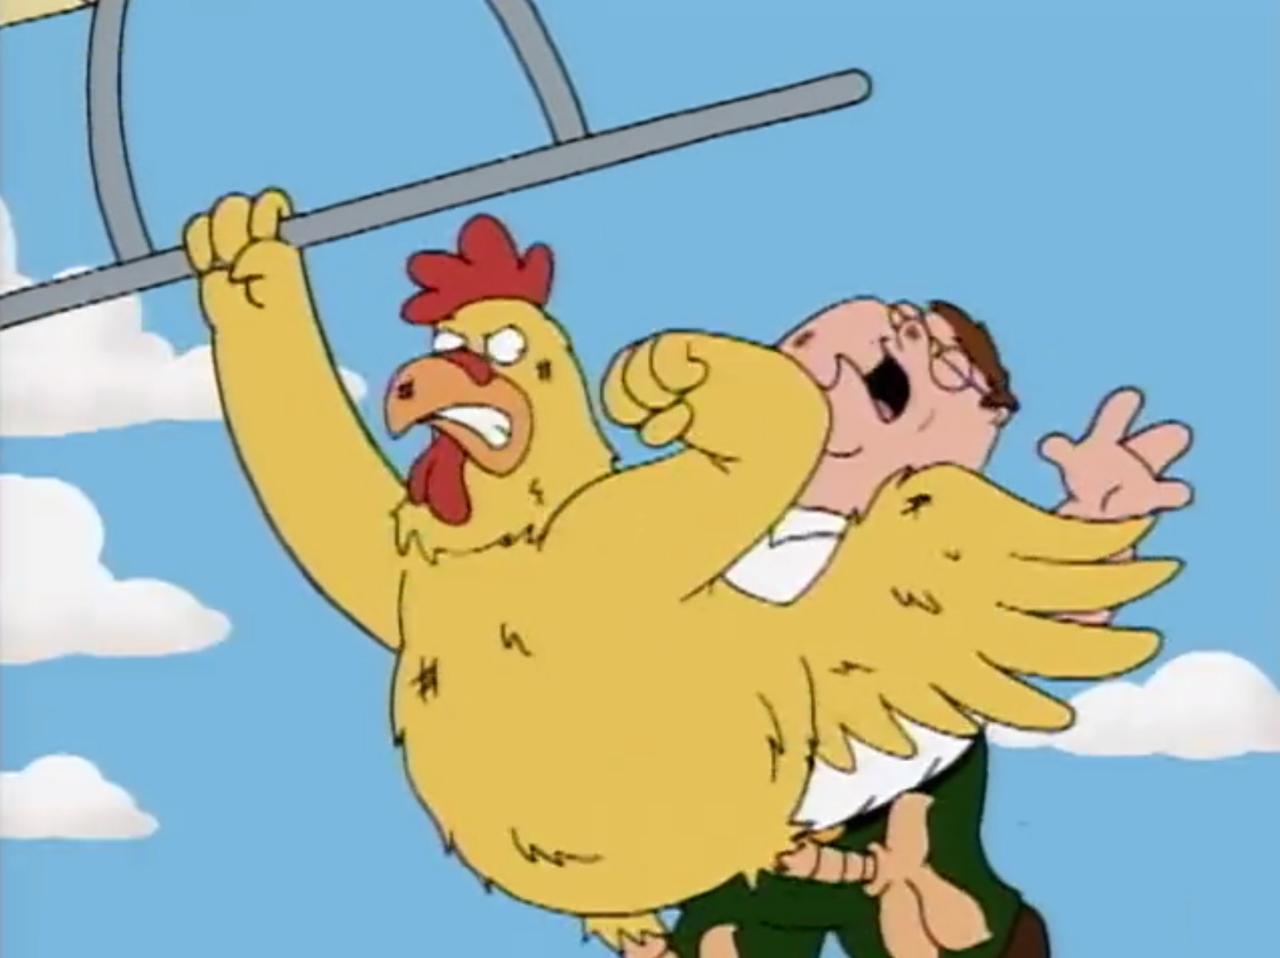 6. Chicken Fight #1